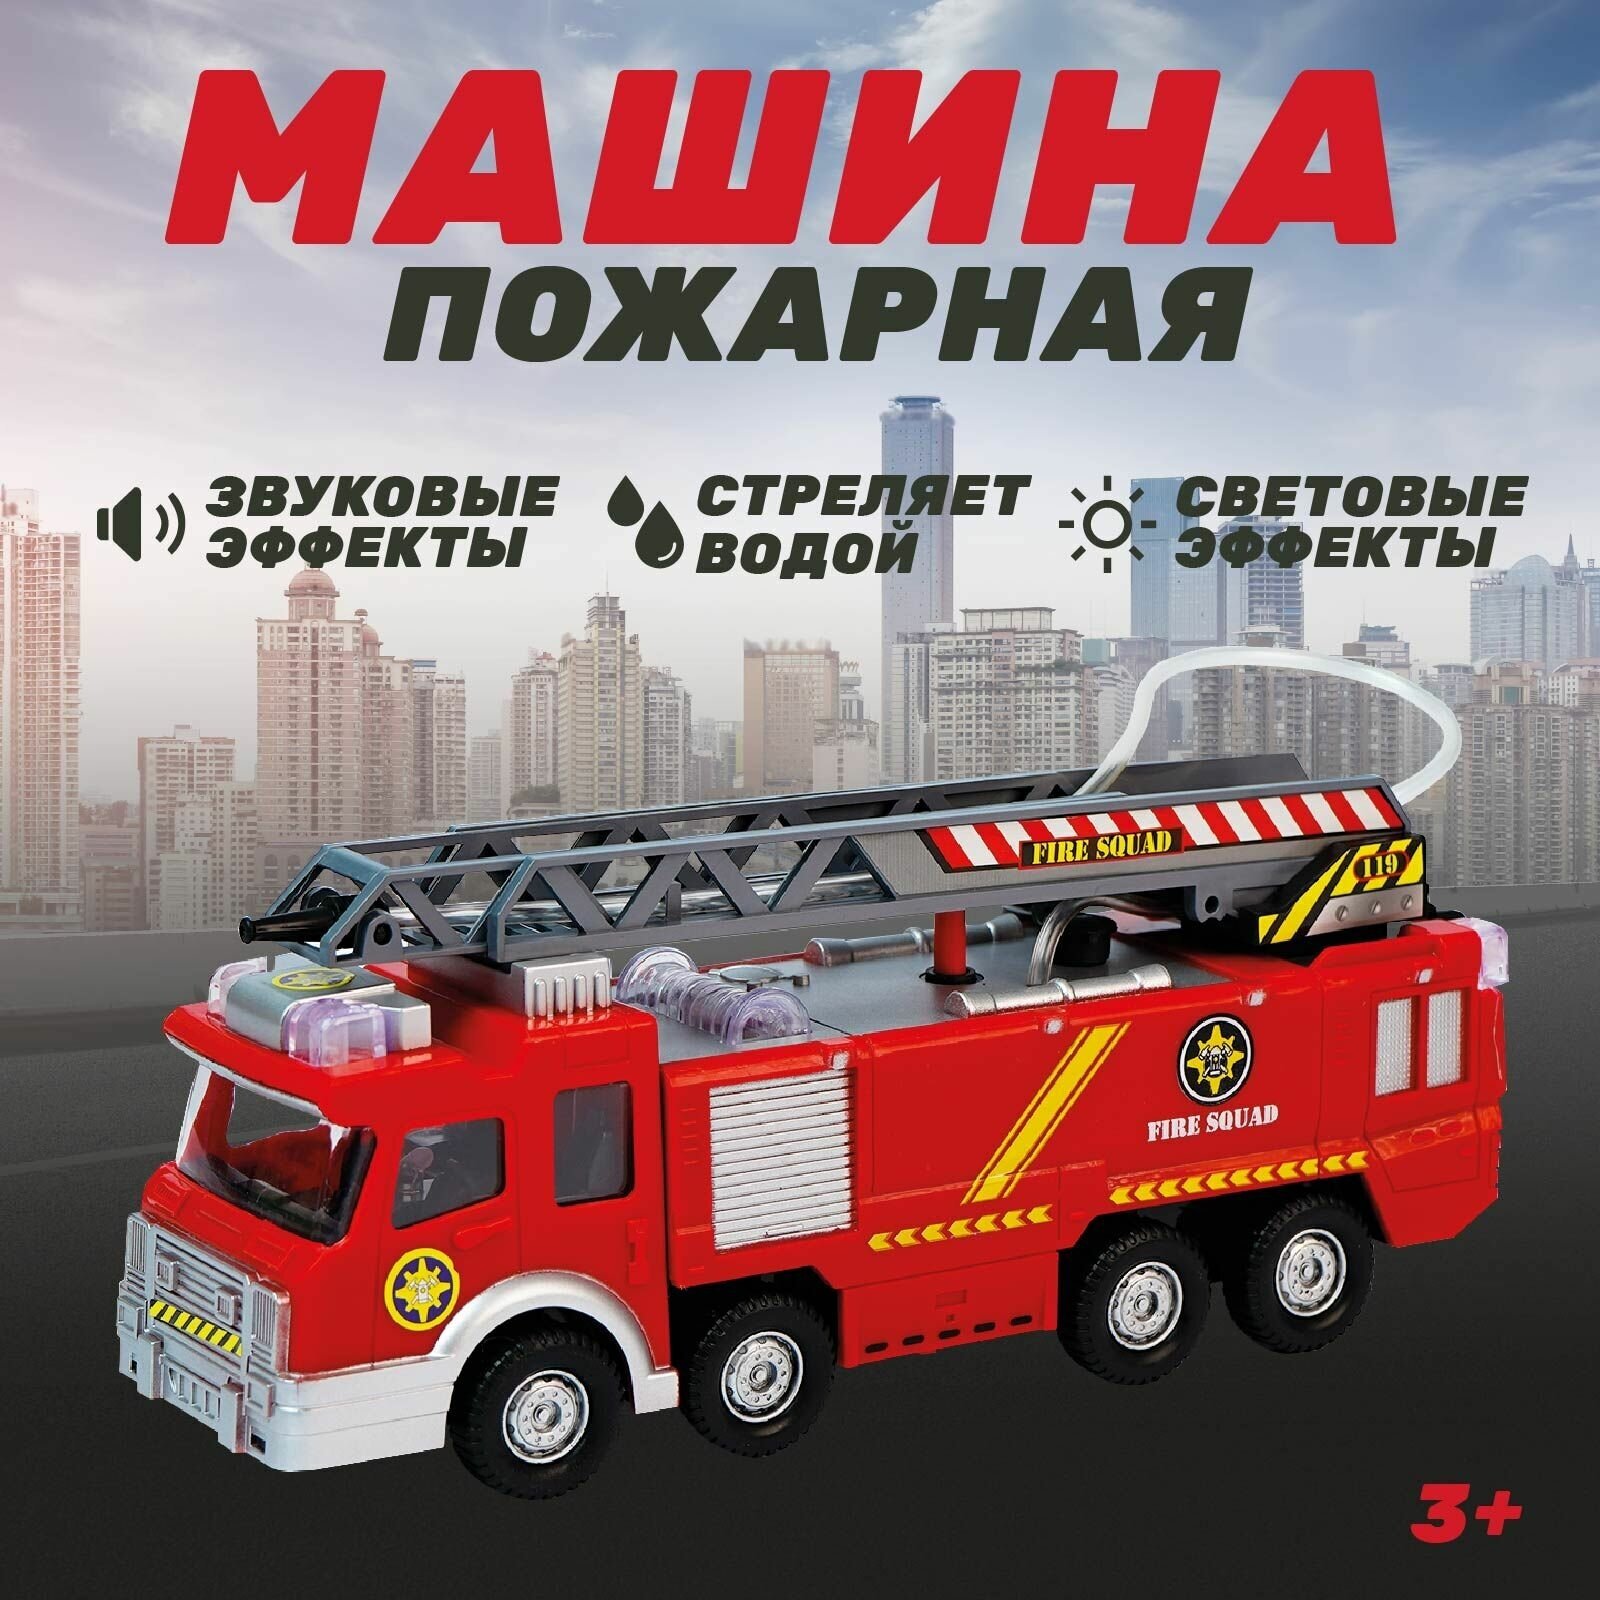 Машина Автоград "Пожарная", русская озвучка, световые и звуковые эффекты, стреляет водой